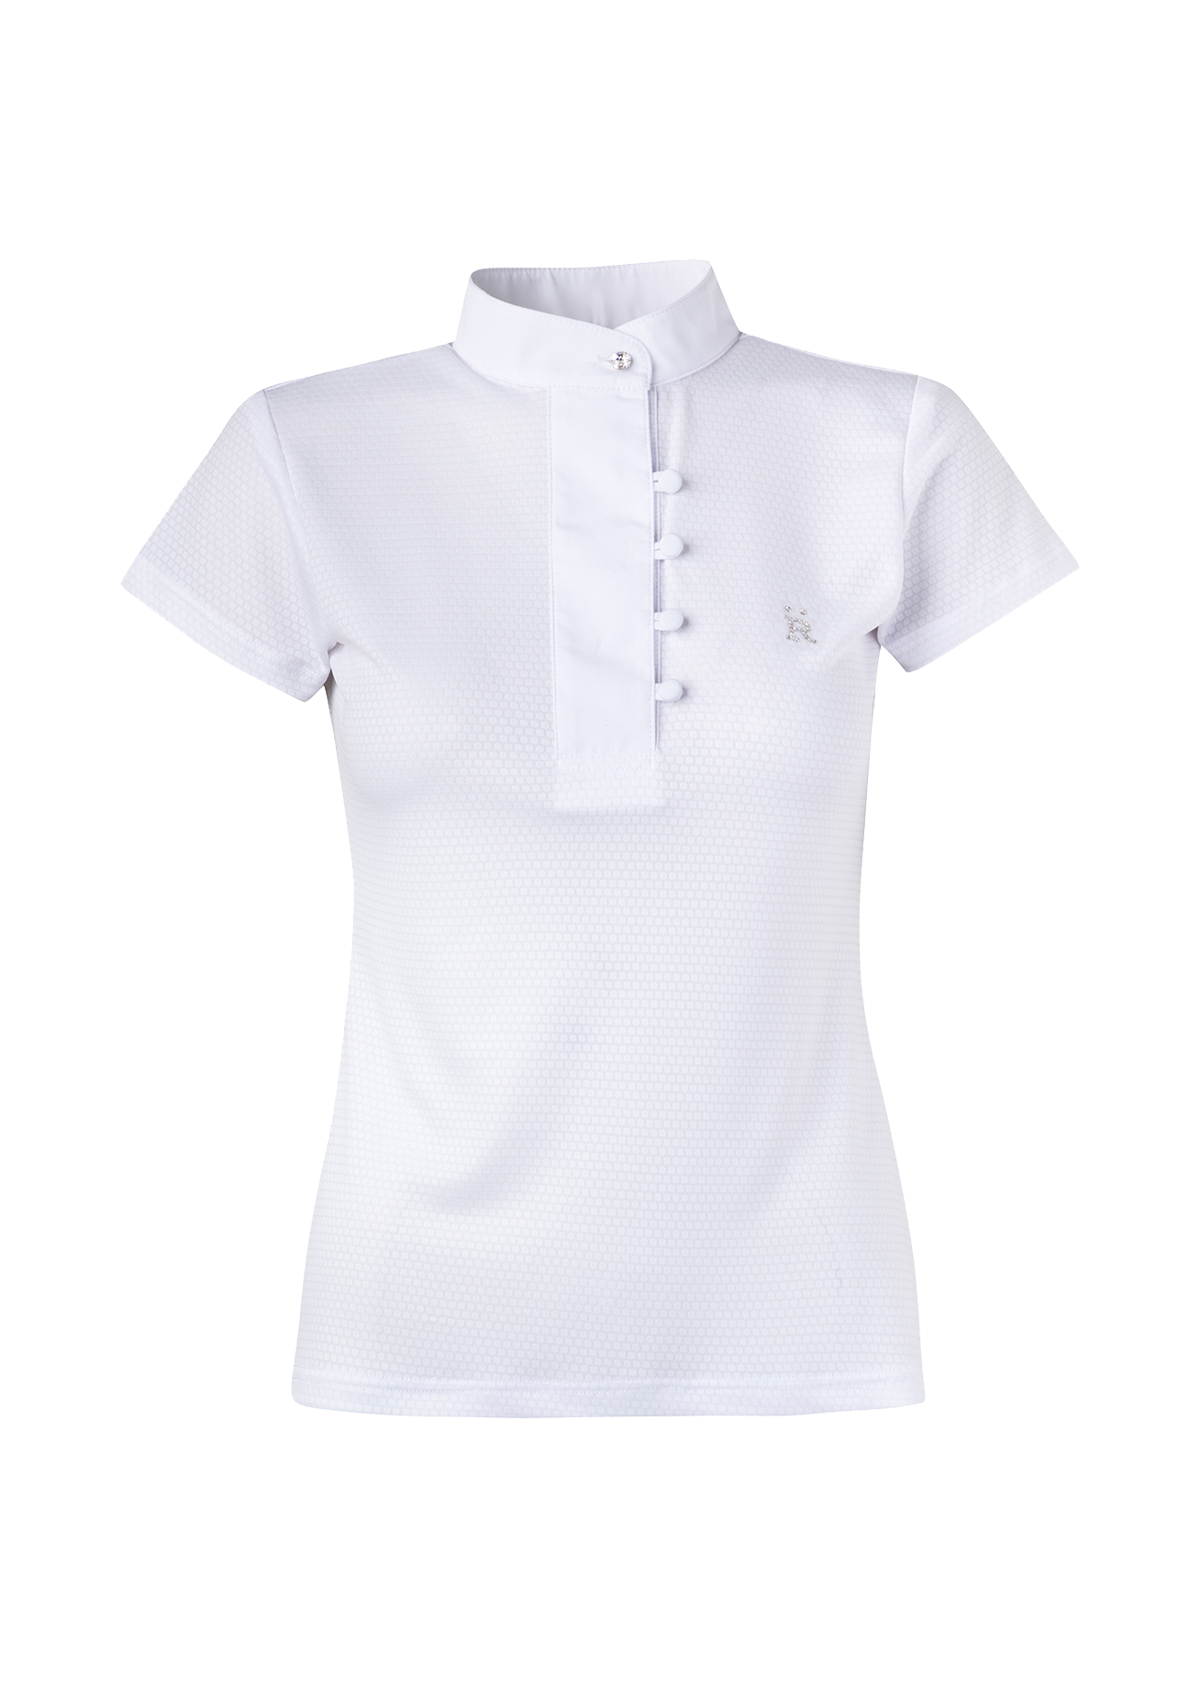 Perla Show Shirt | White - Only One Left | Rönner